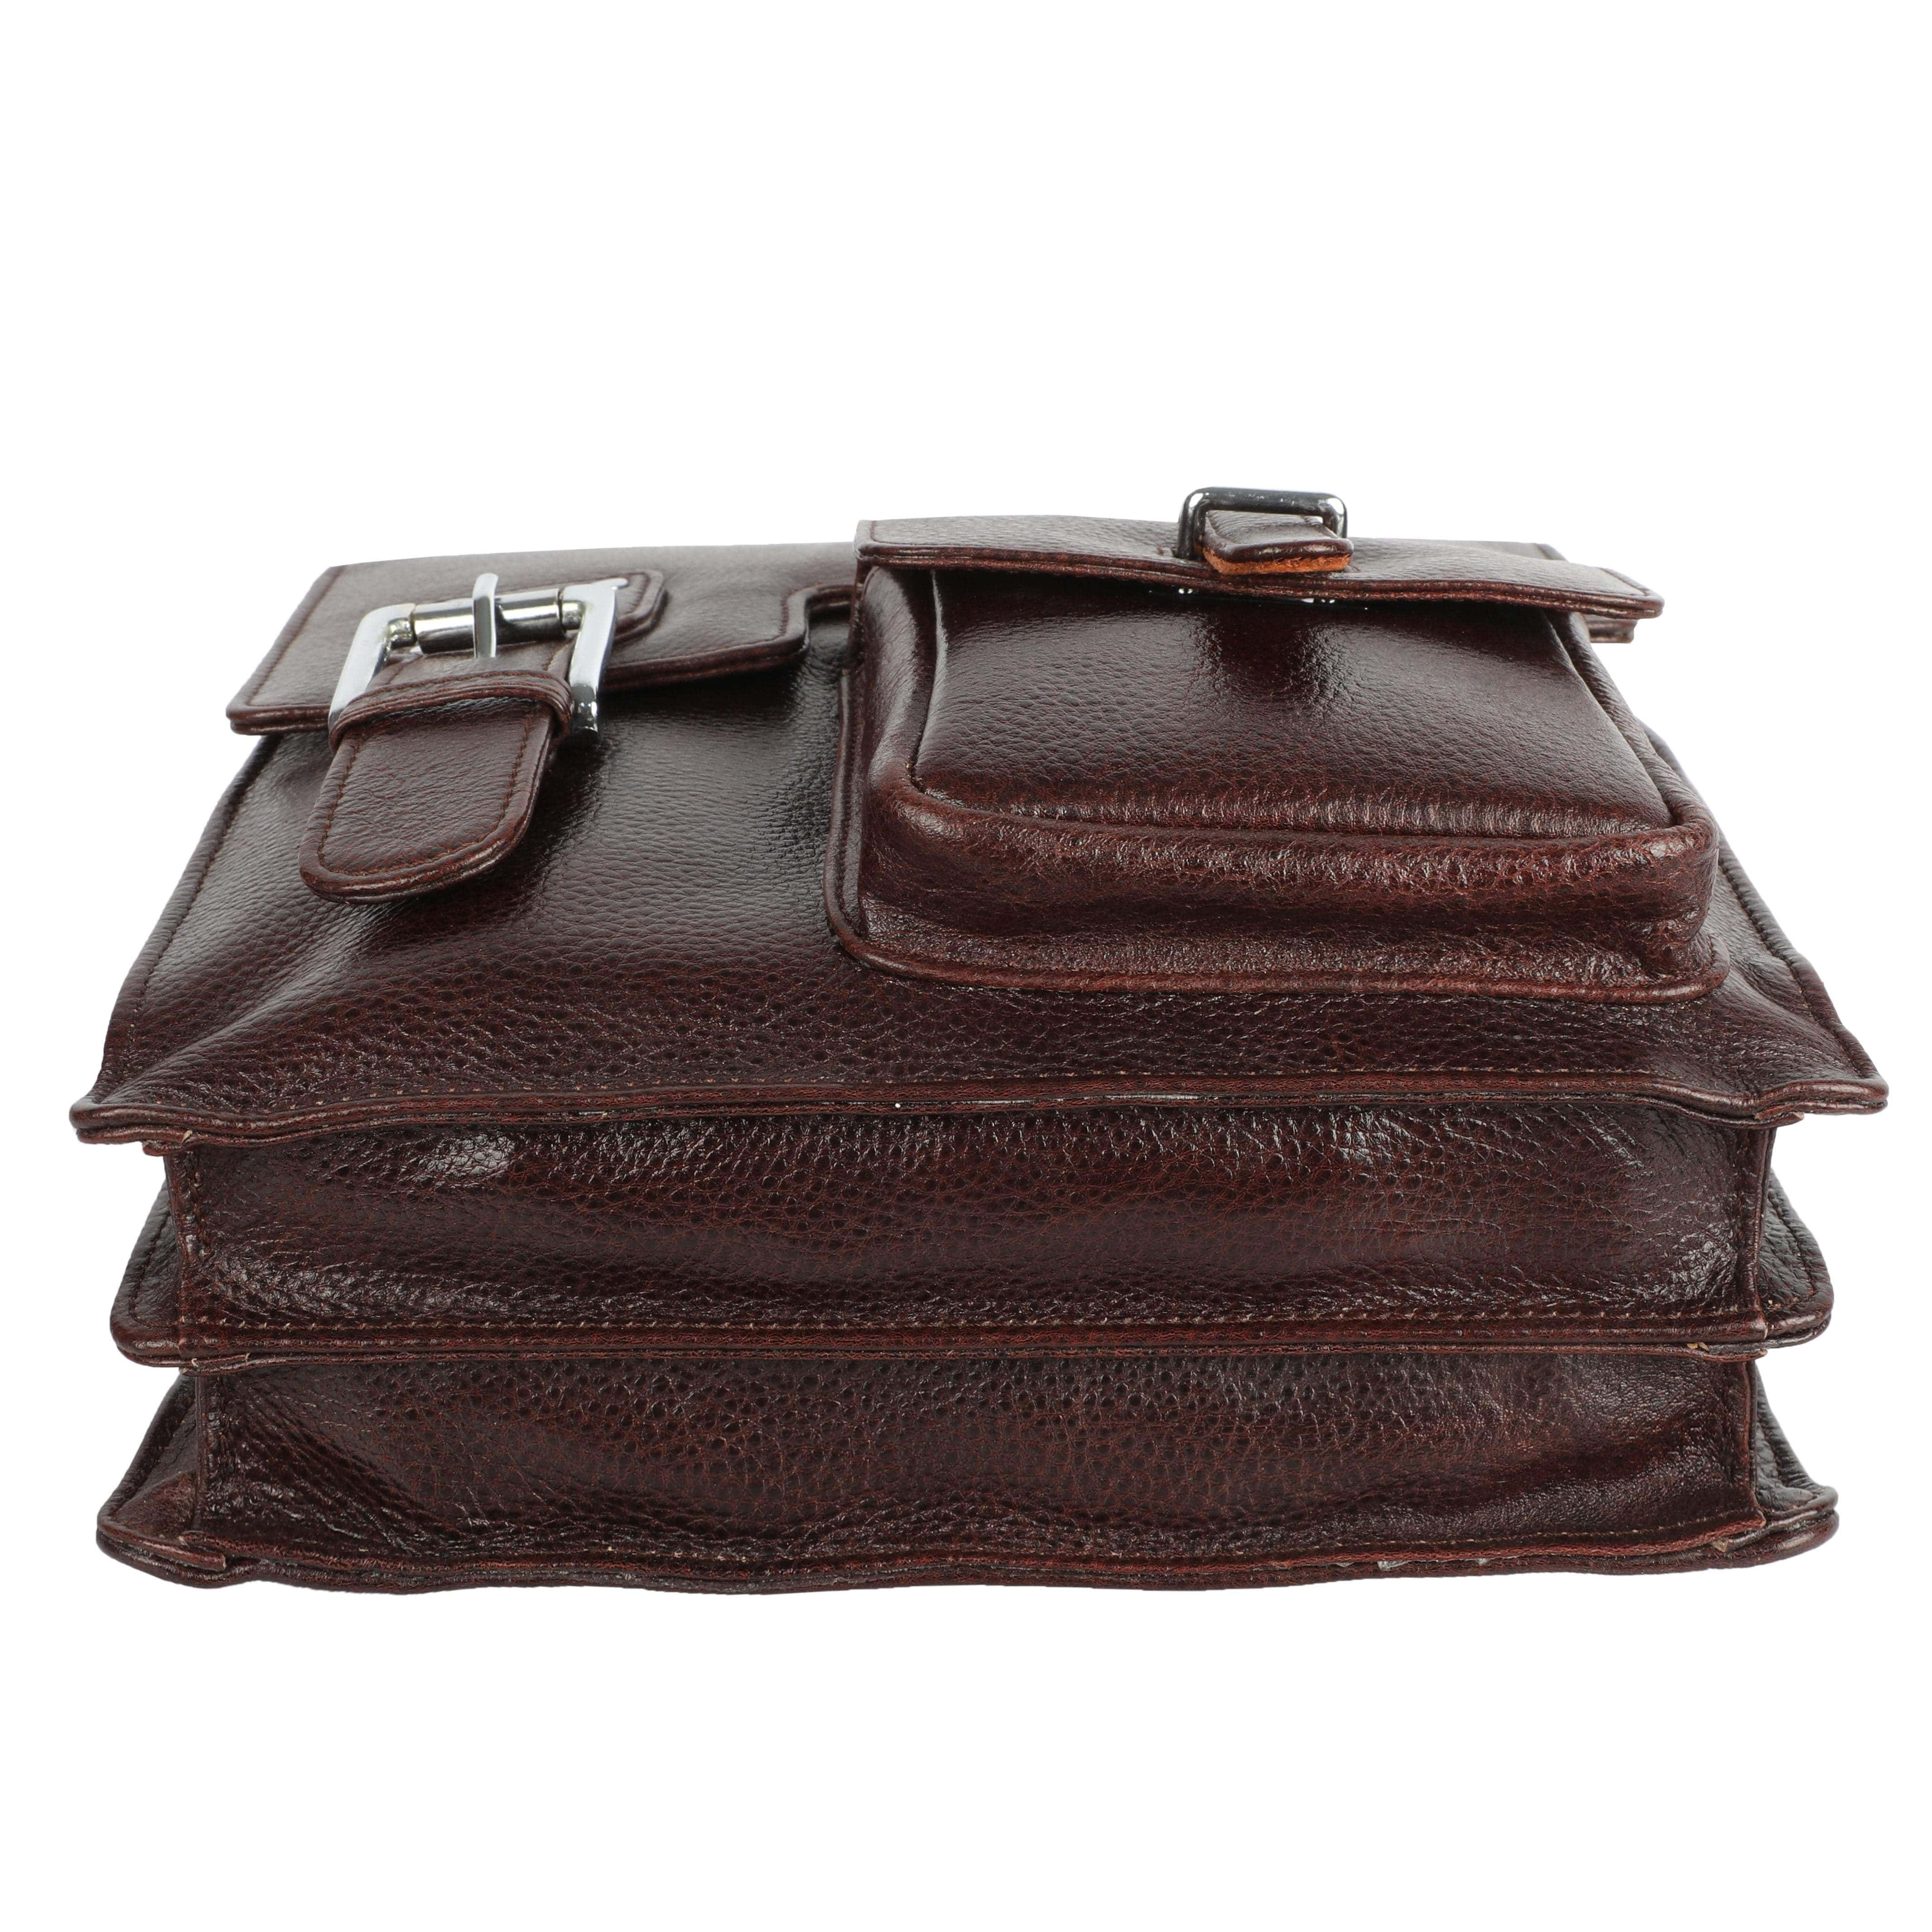 kinnoti Brown Unisex Genuine Leather Messenger & iPad Bag